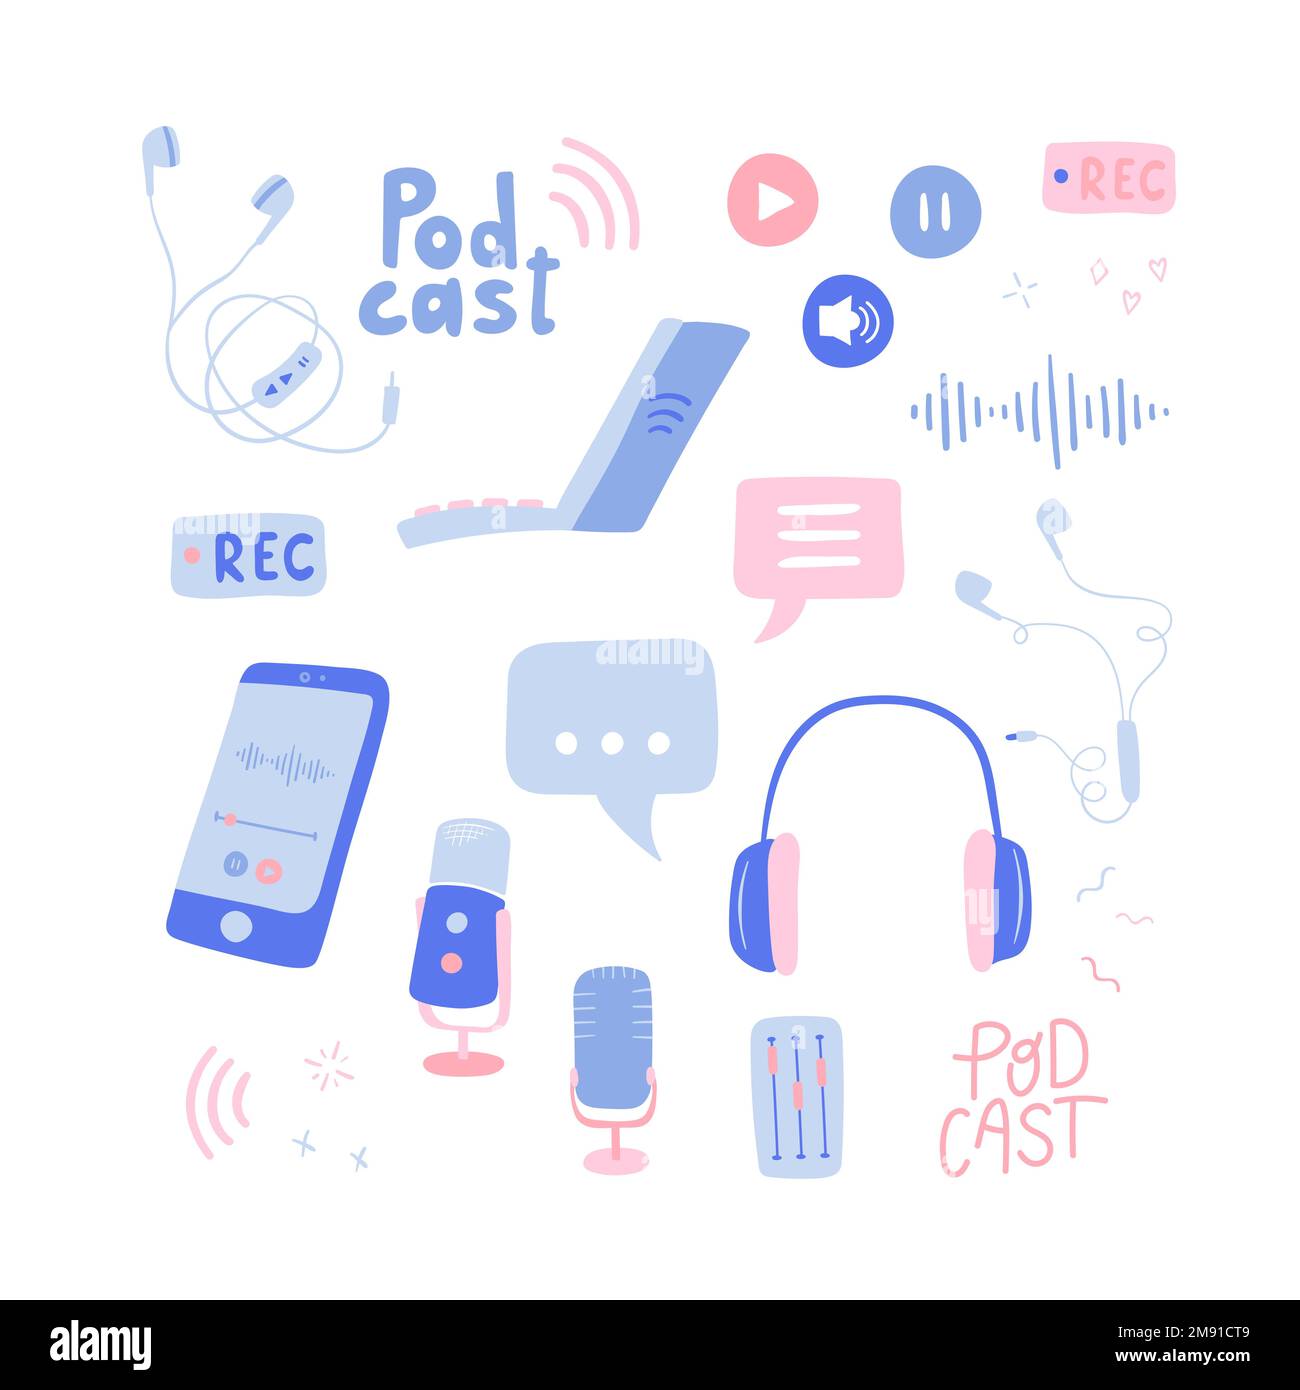 Elementi Podcast divertenti disegnati a mano, cuffie, microfono, laptop, smartphone, bolle vocali. Registrazione e ascolto di podcast - disegno vettoriale Illustrazione Vettoriale